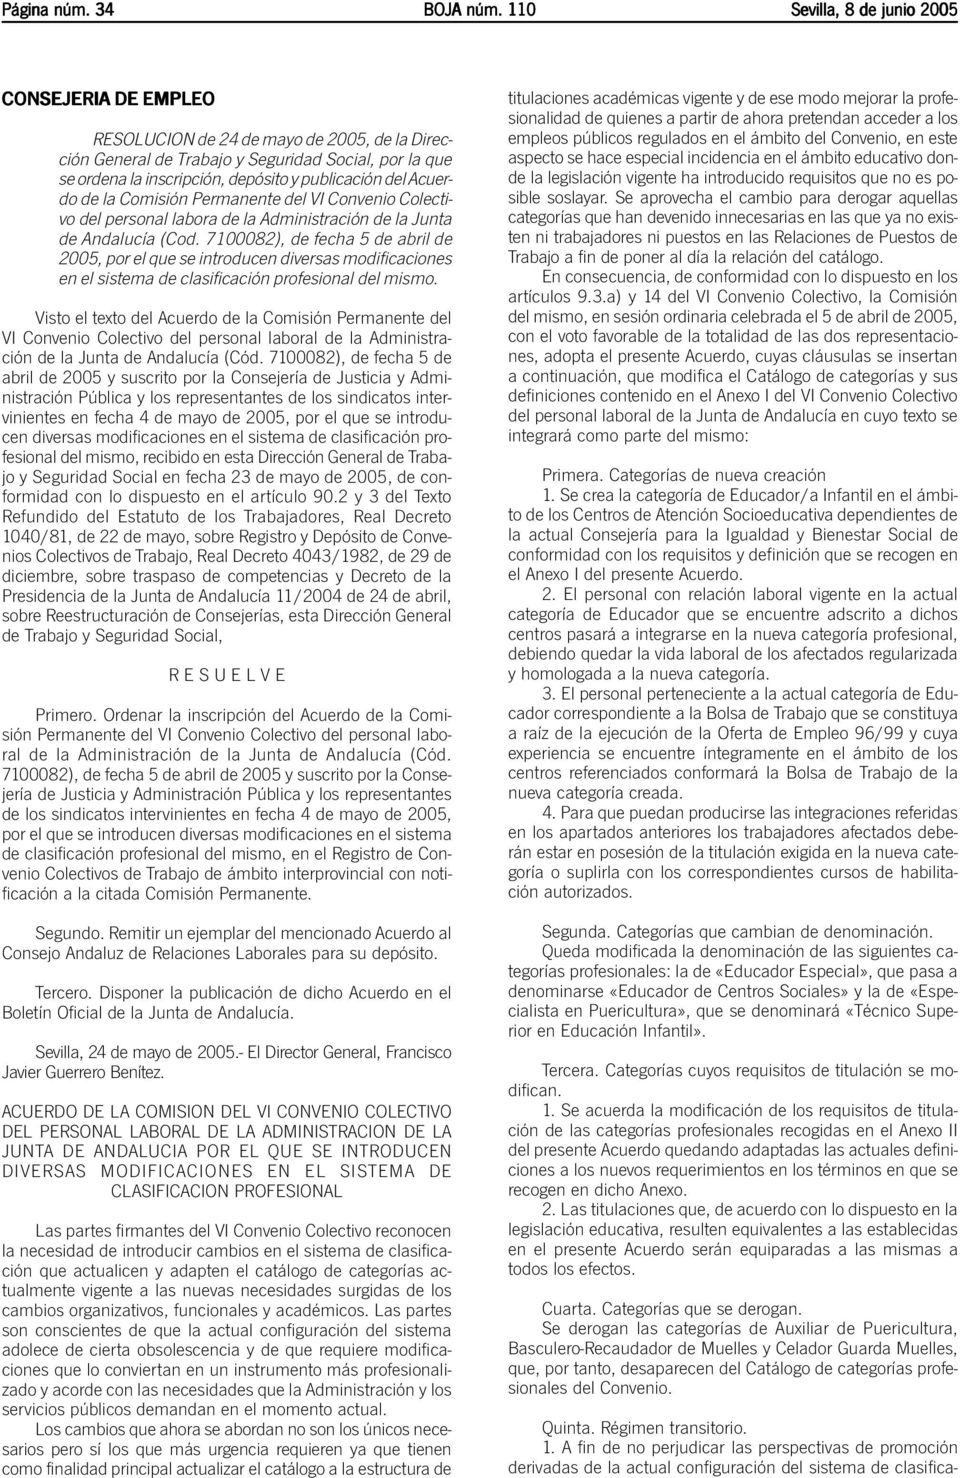 del Acuerdo de la Comisión Permanente del VI Convenio Colectivo del personal labora de la Administración de la Junta de Andalucía (Cod.